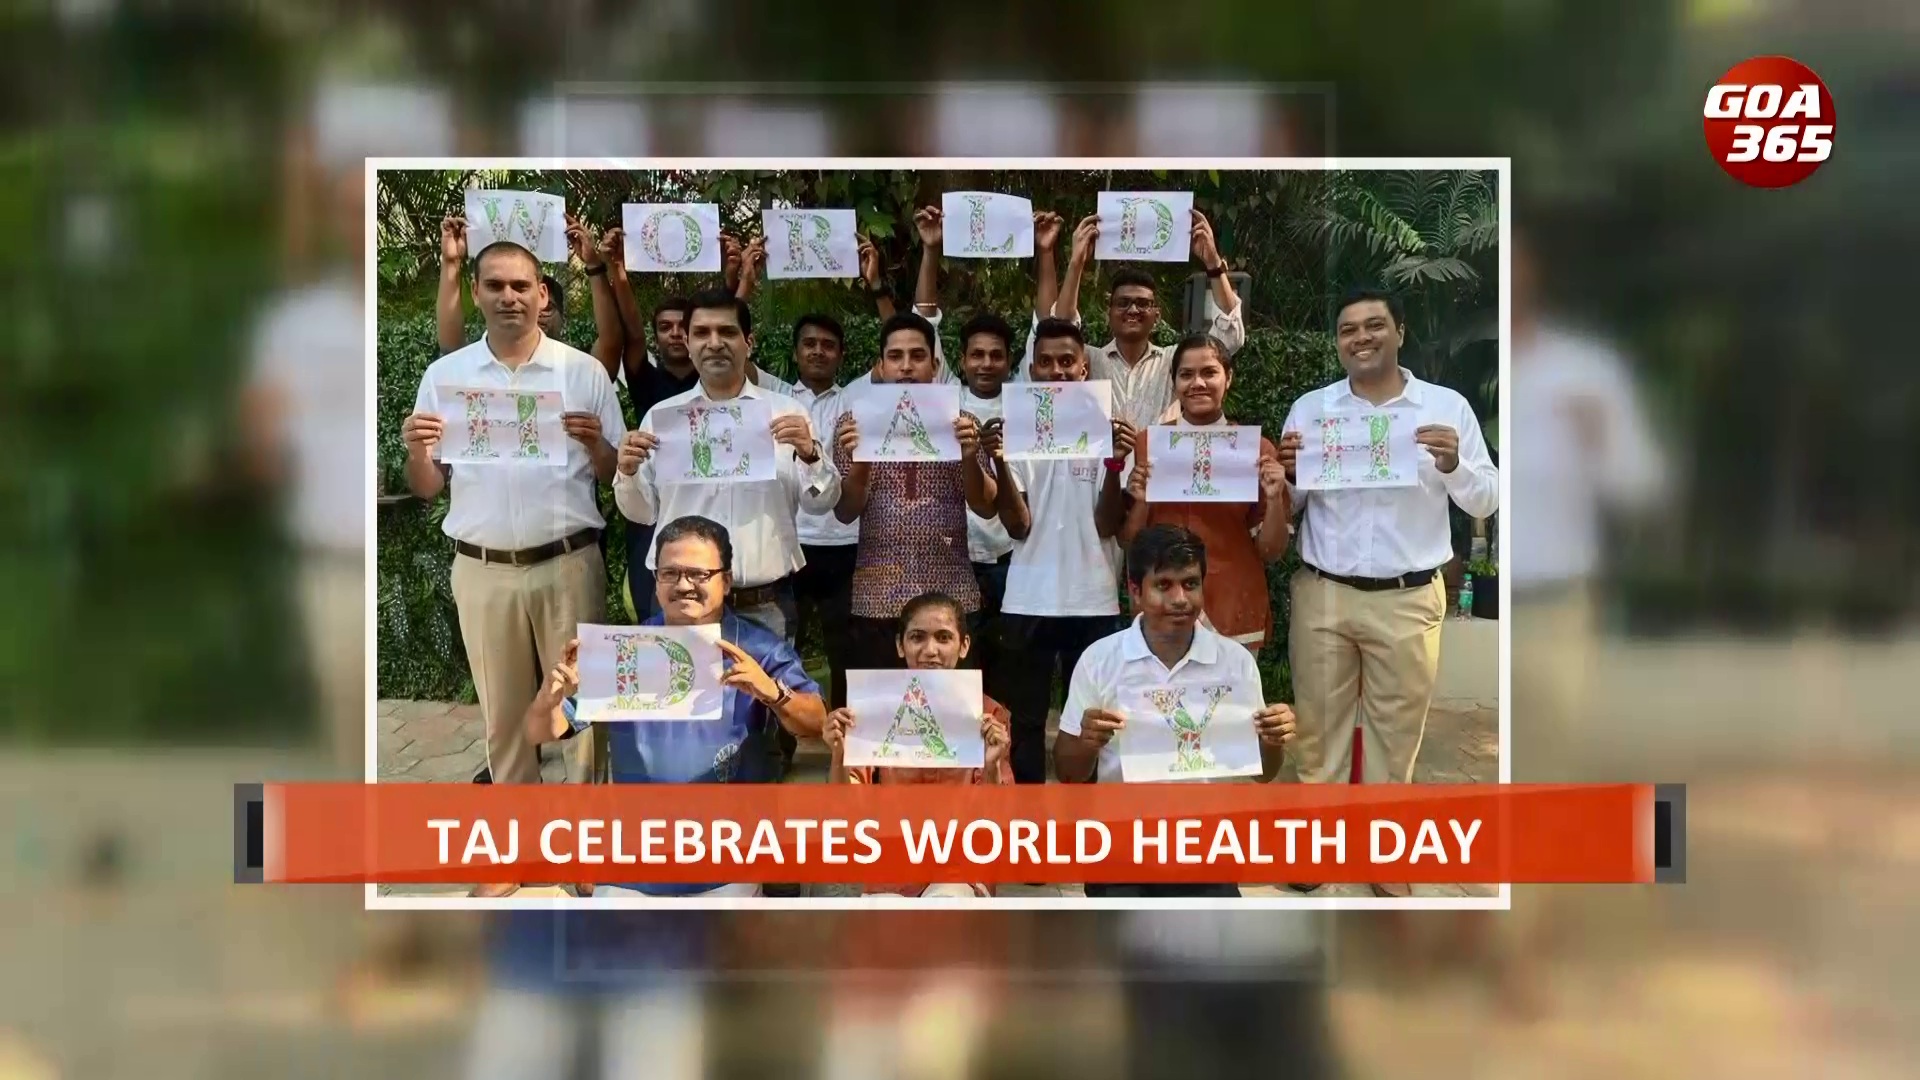 Taj celebrates world health day – organizes Walkathon to raise awareness || ENGLISH || GOA365